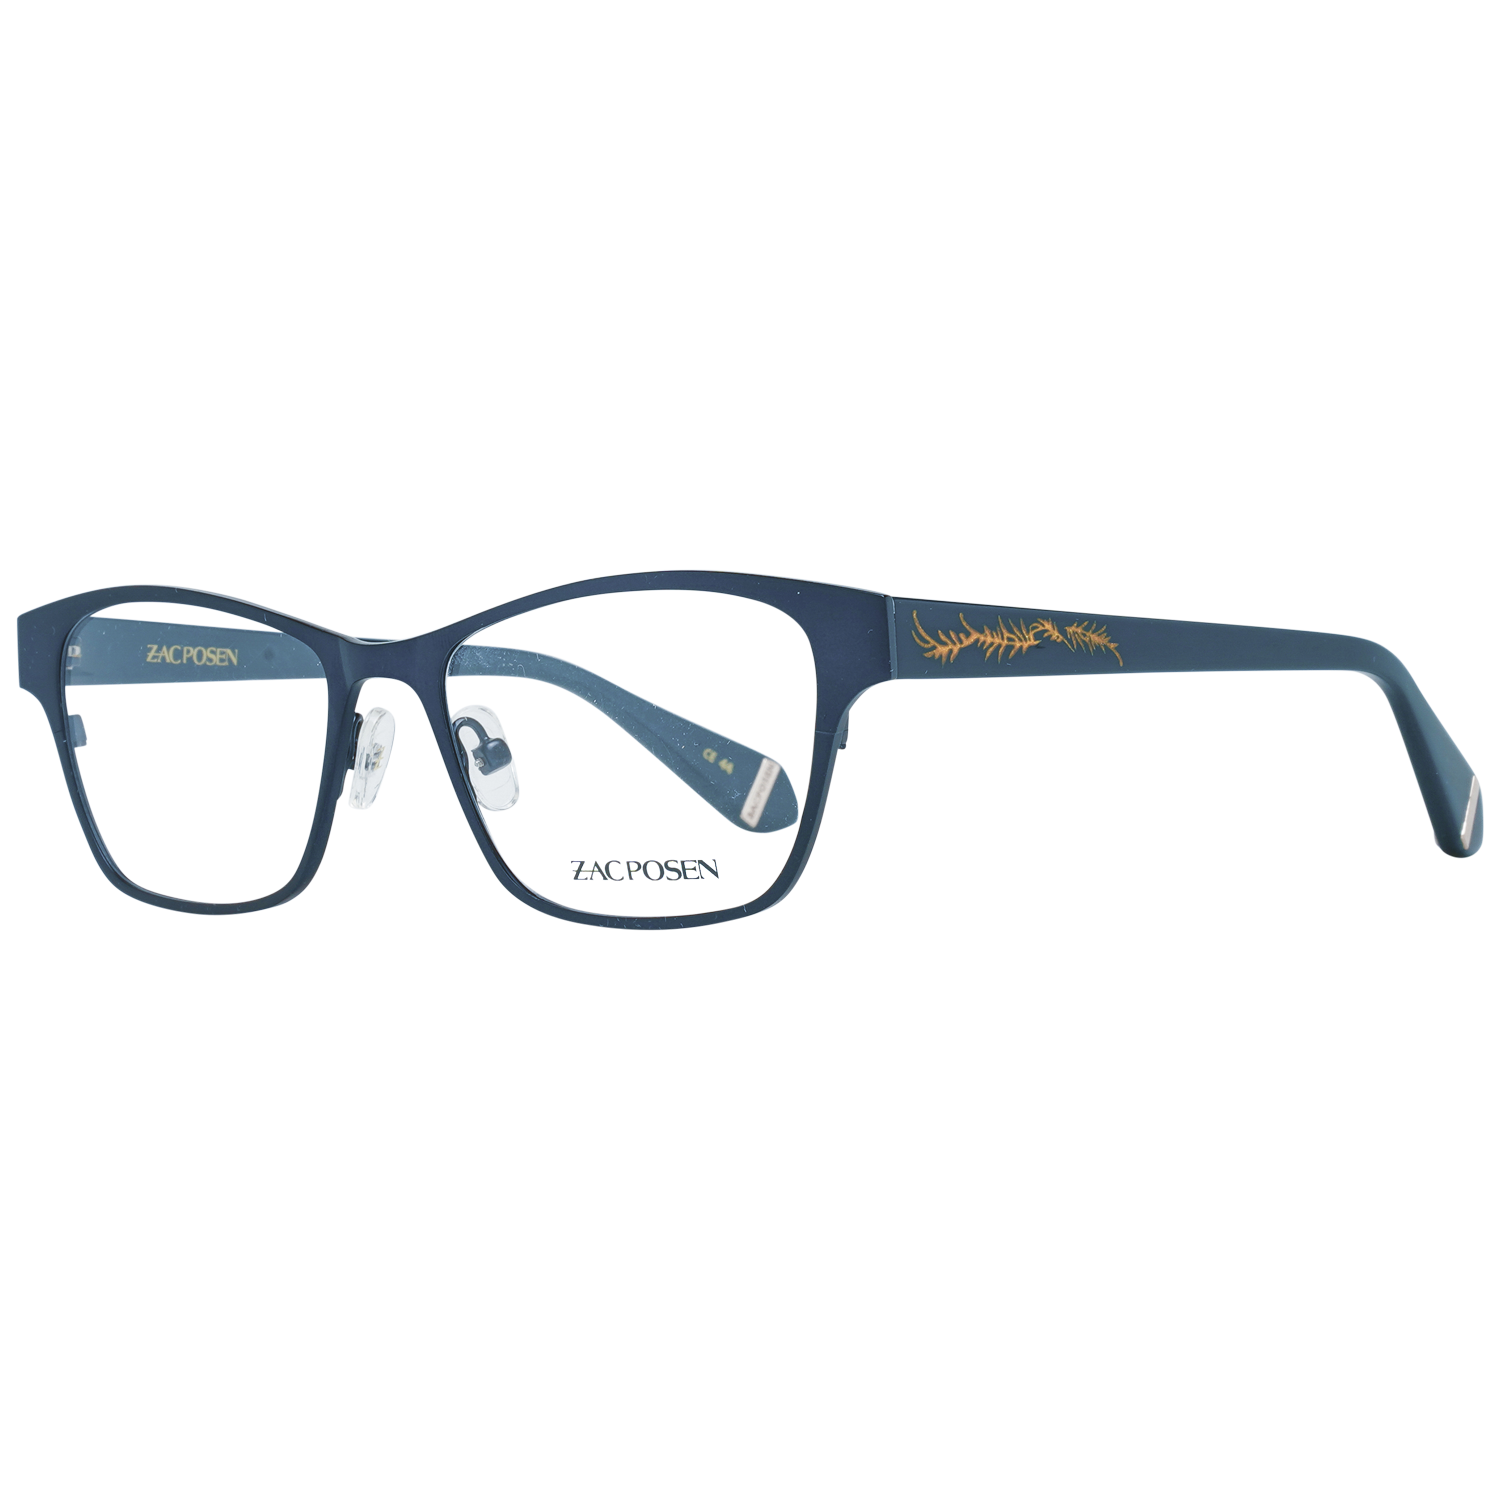 Zac Posen Frames Zac Posen Glasses Frames ZHAT BL 50 Hattie Eyeglasses Eyewear UK USA Australia 